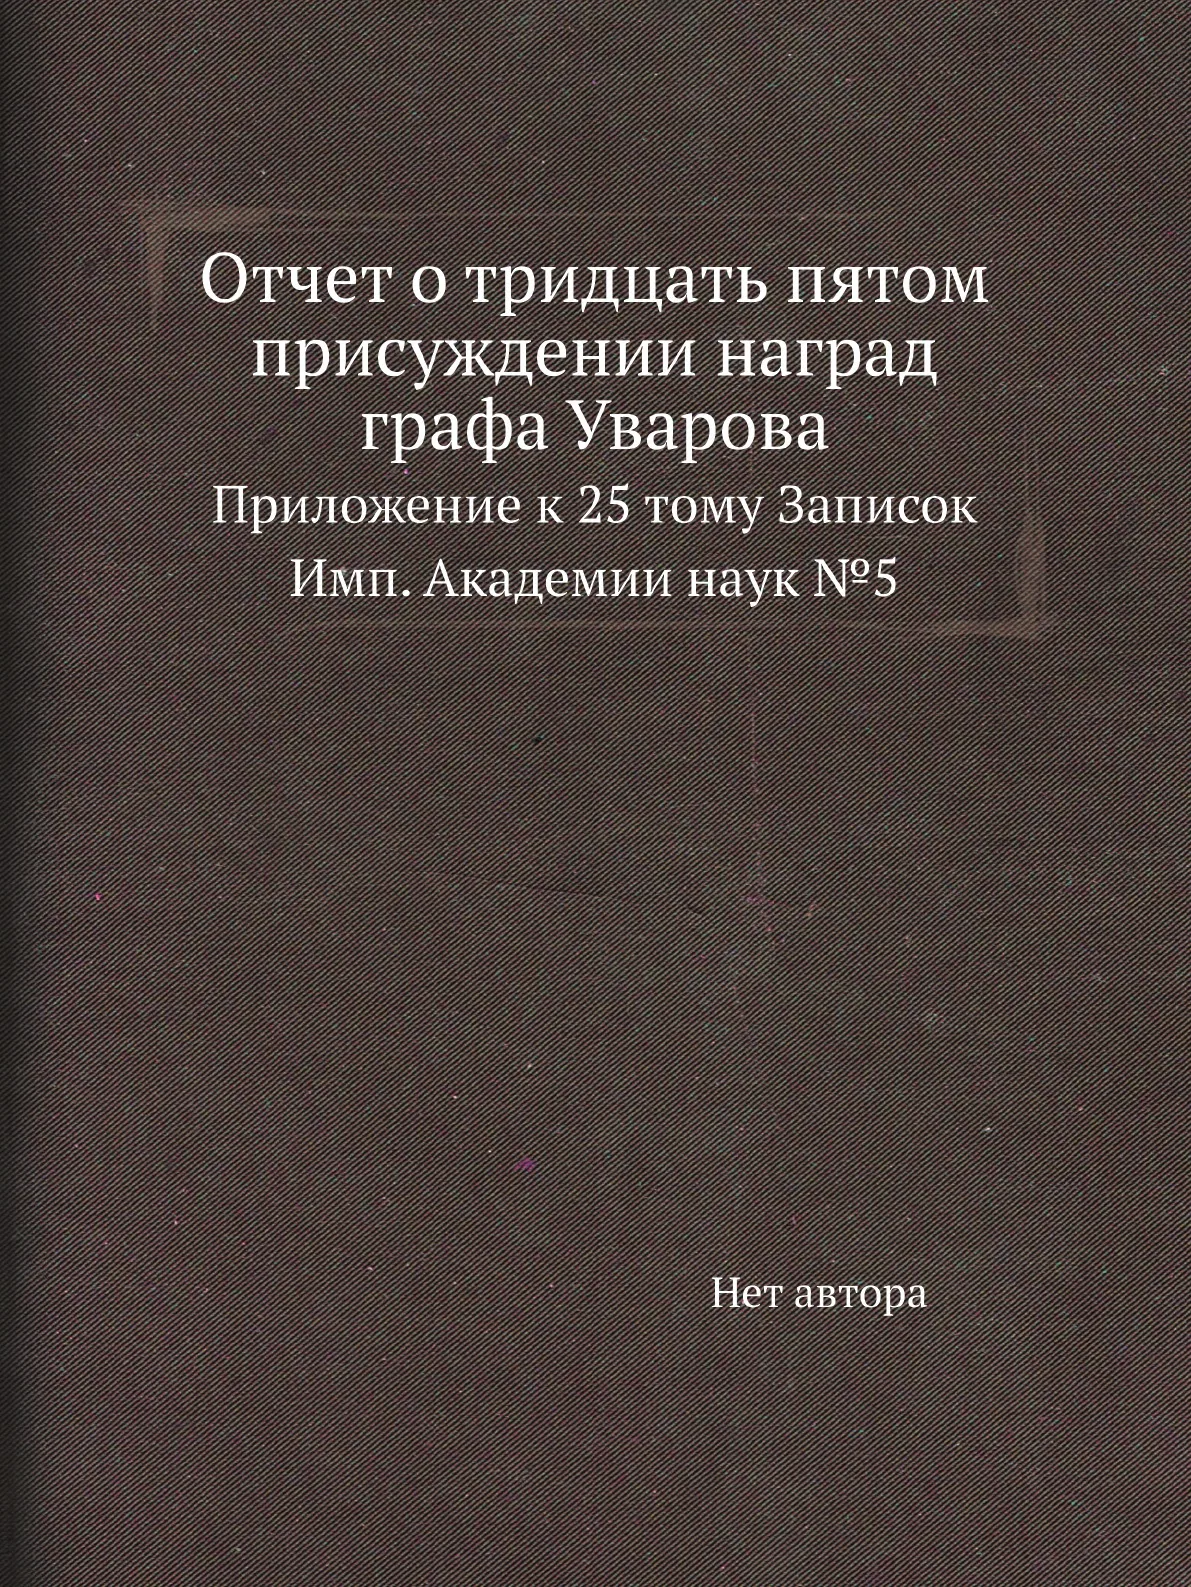 Книга Отчет о тридцать пятом присуждении наград графа Уварова. Приложение к 25